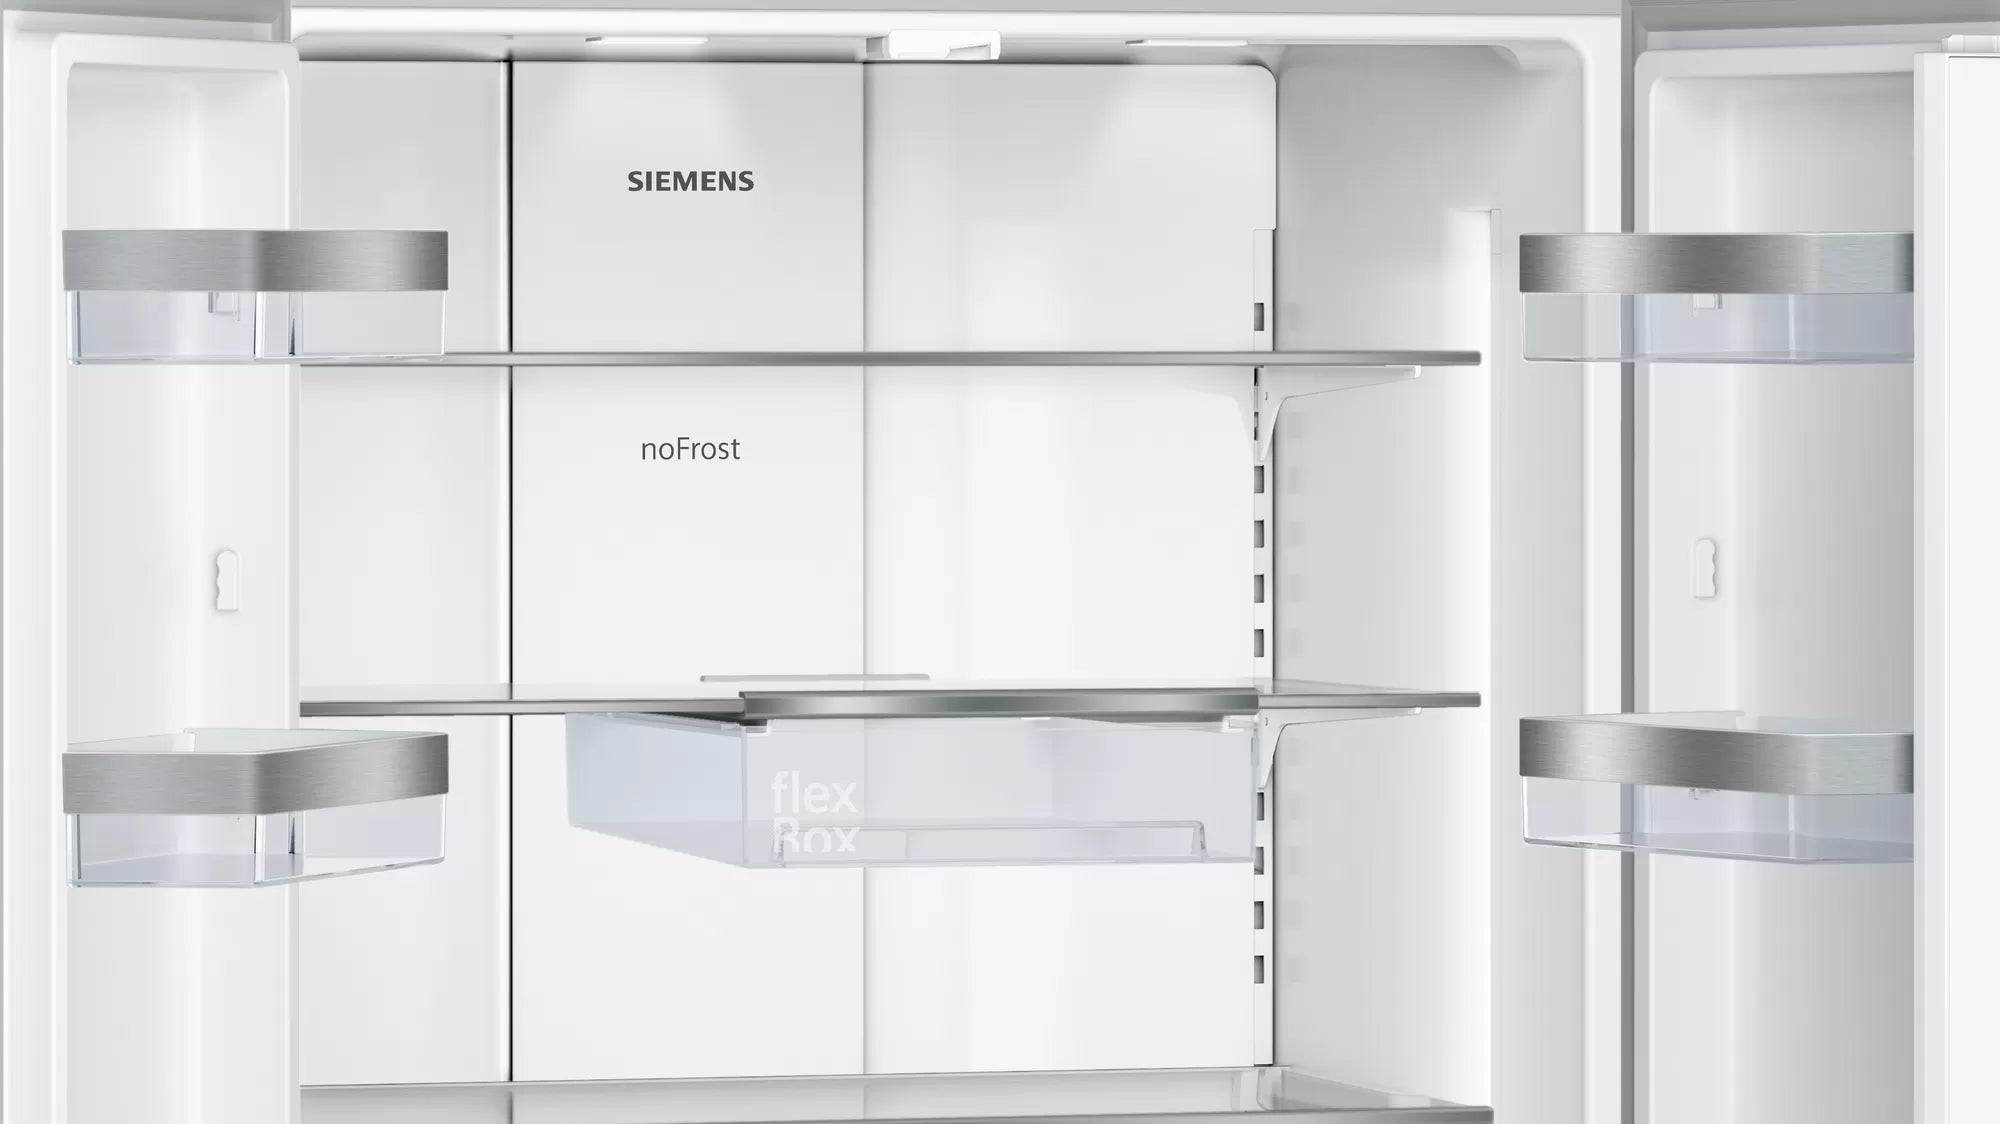 Siemens 西門子 KF86FPBEA iQ700 540公升 法式多門無霜雪櫃 - Fever Electrics 電器熱網購平台